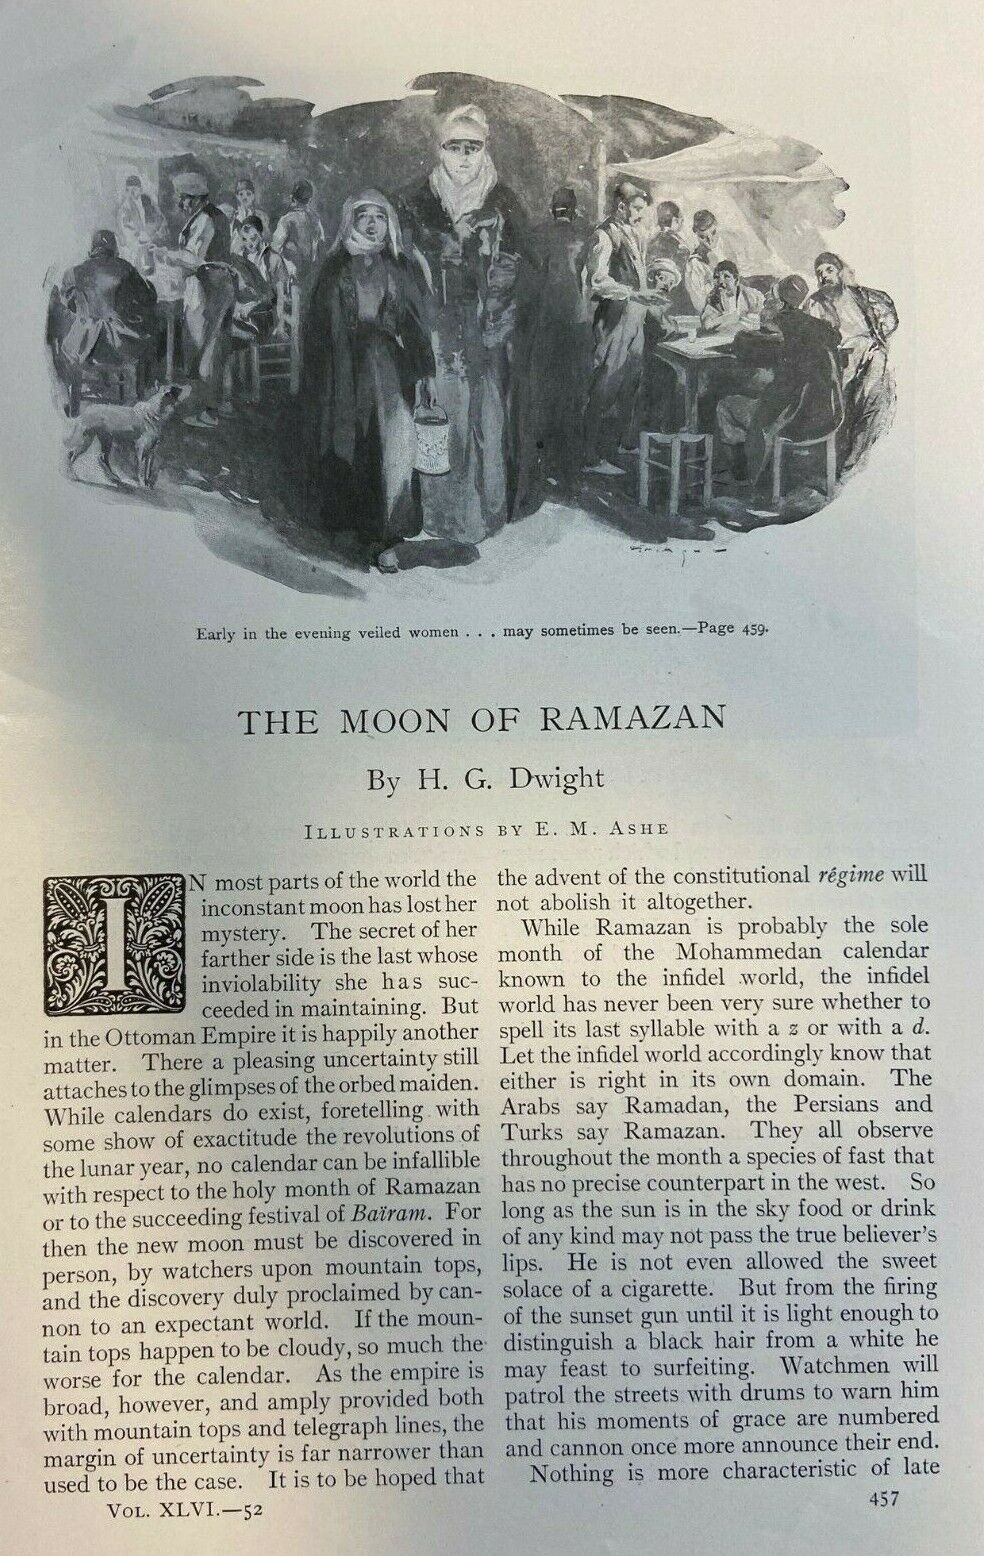 1909 Turkey Ottoman Empire Celebrating the Moon of Ramazan illustrated